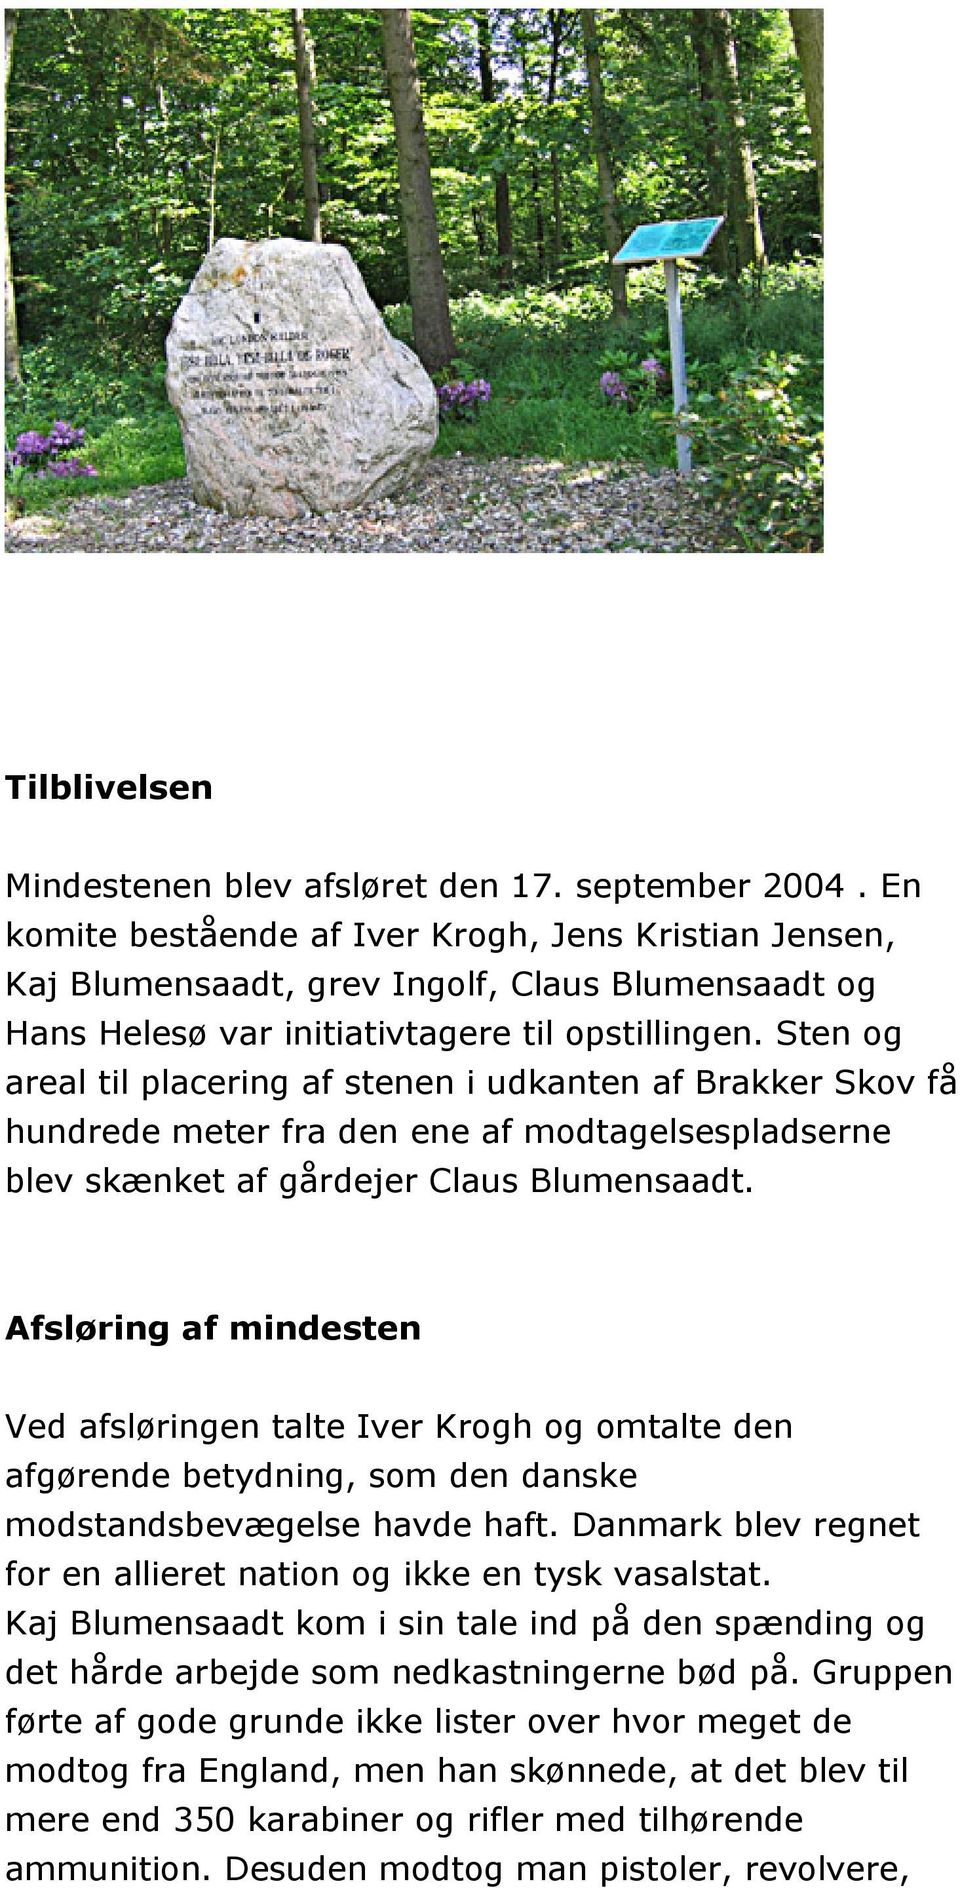 Sten og areal til placering af stenen i udkanten af Brakker Skov få hundrede meter fra den ene af modtagelsespladserne blev skænket af gårdejer Claus Blumensaadt.